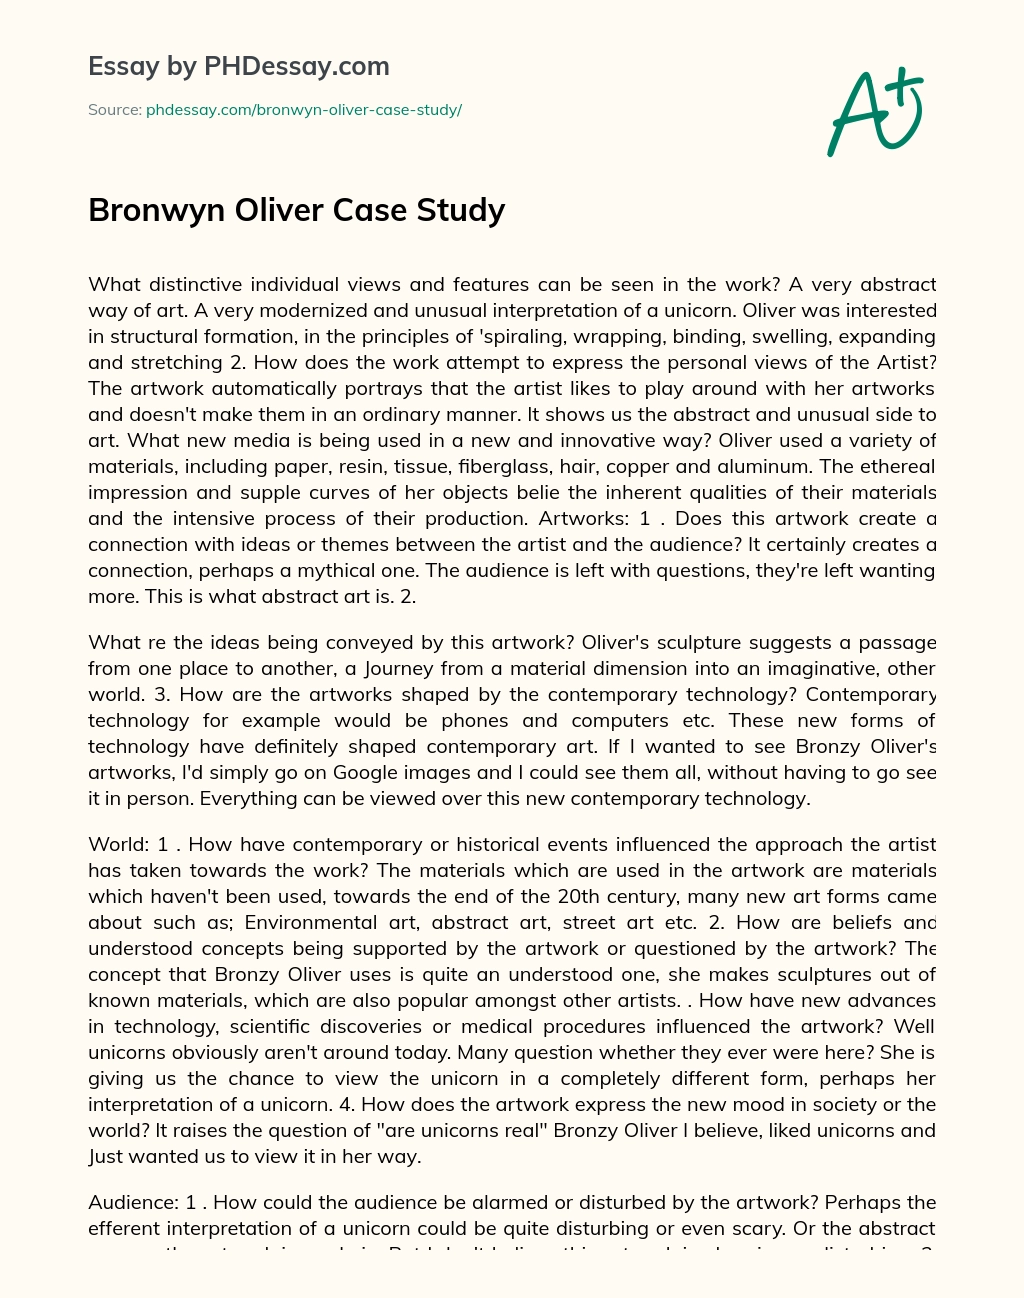 Bronwyn Oliver Case Study essay